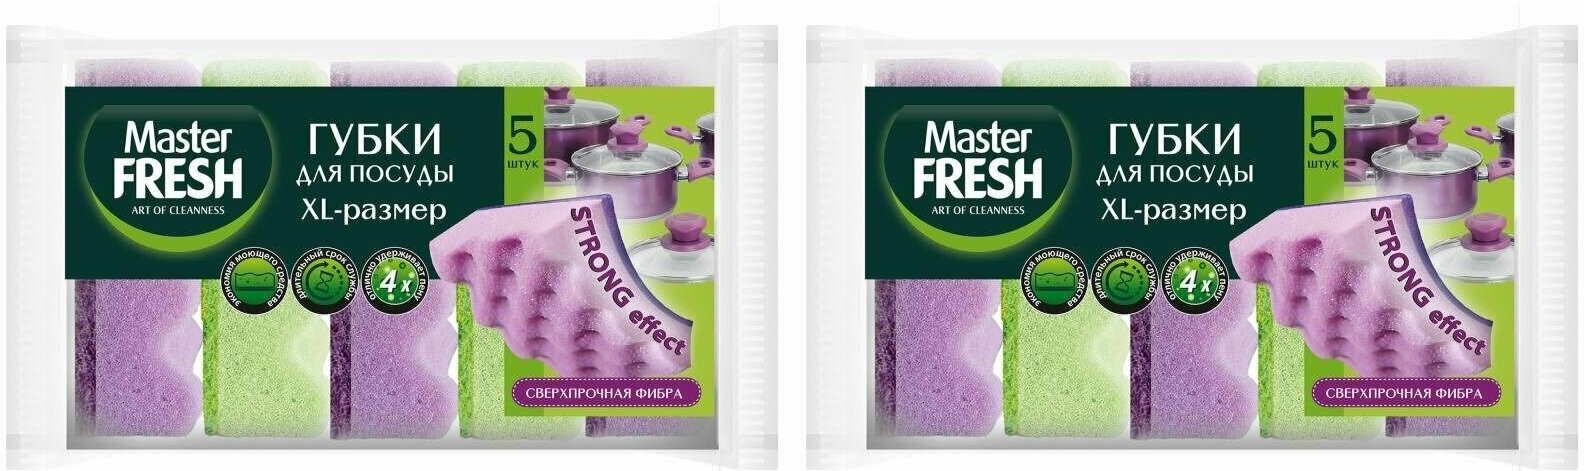 Master Fresh Губки для мытья посуды Strong effect XL, 5 штук в упаковке, 2 уп/